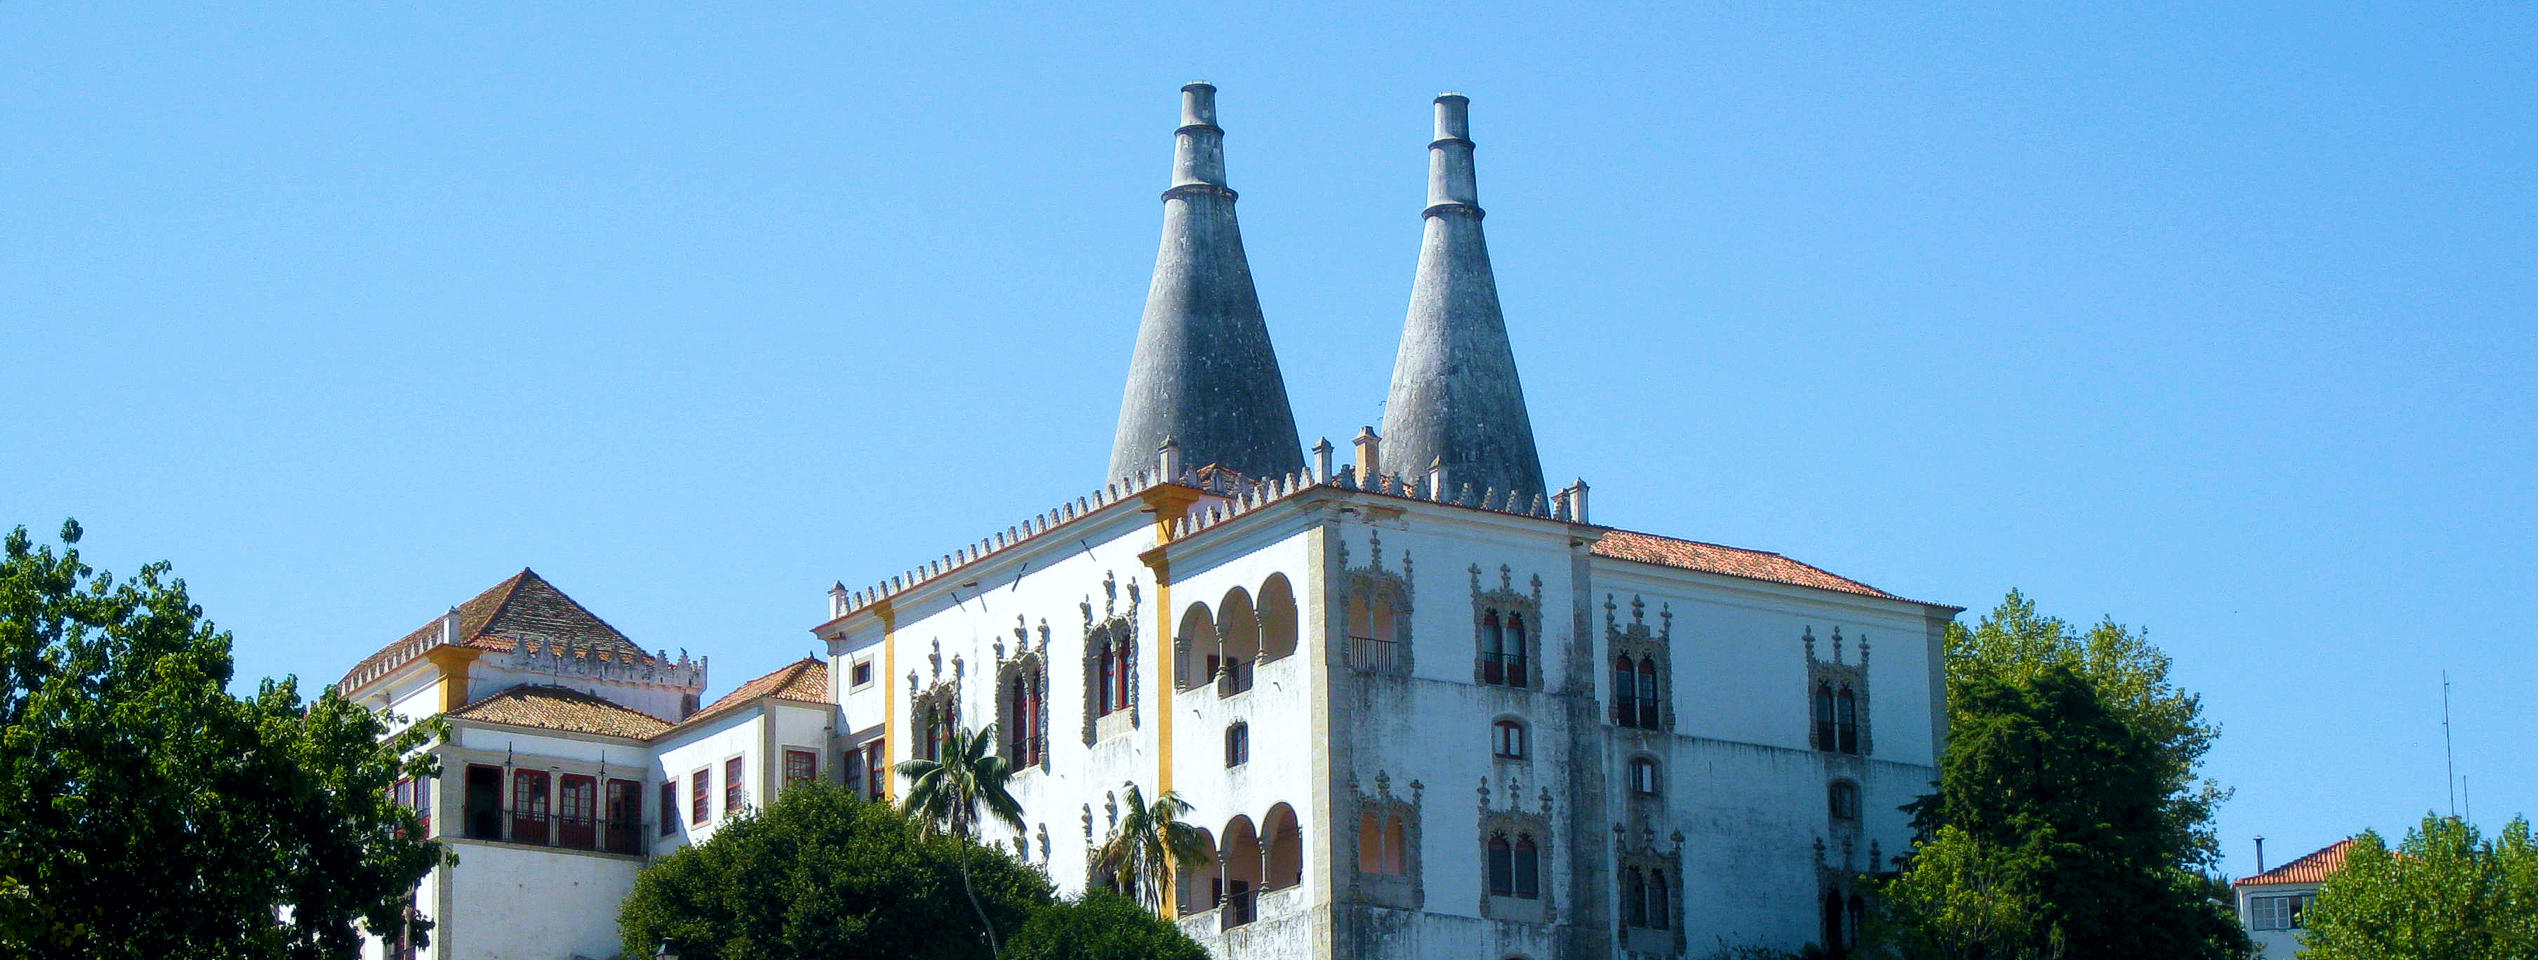 Palácio Nacional de Sintra com as suas chaminés ex-libris de Sintra